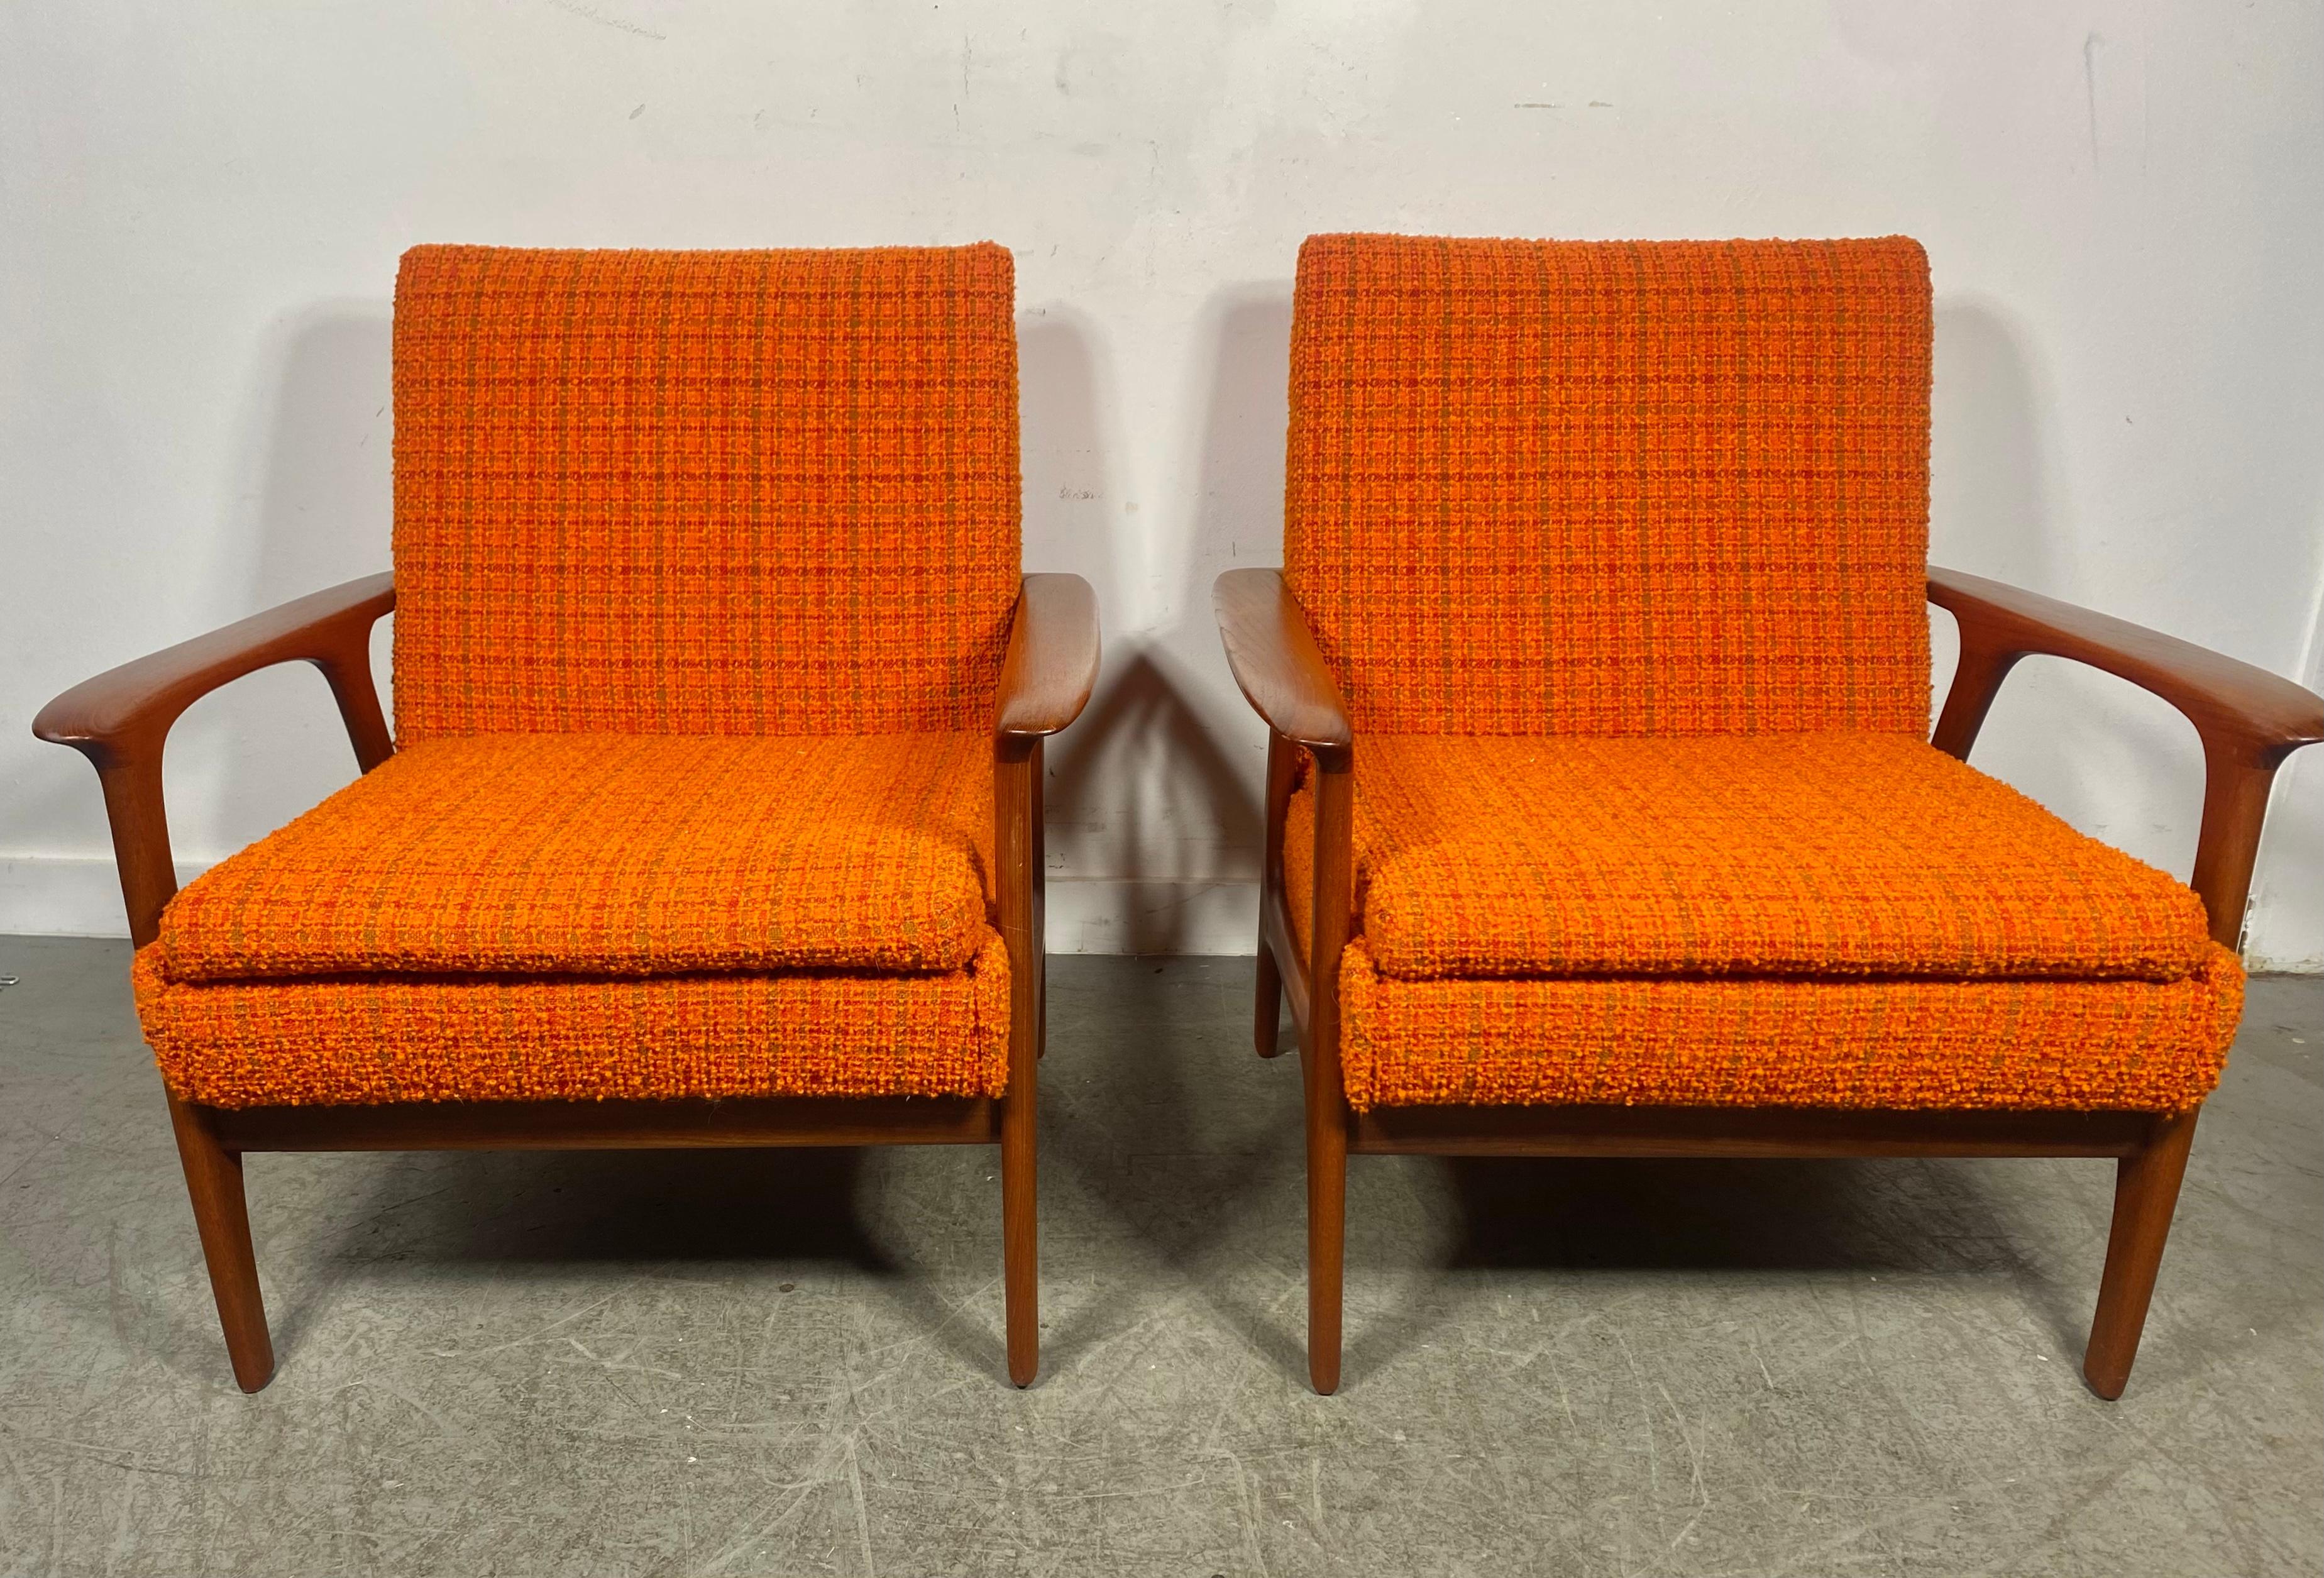 Klassische PAAR Scandinavian Modern Teak Lounge Chairs , Art von Hans Wegner. Hervorragende Qualität und Konstruktion, klassisches, schlankes Design. Behält die orangefarbene Original-Wollstoffpolsterung in ausgezeichnetem Originalzustand bei. Die